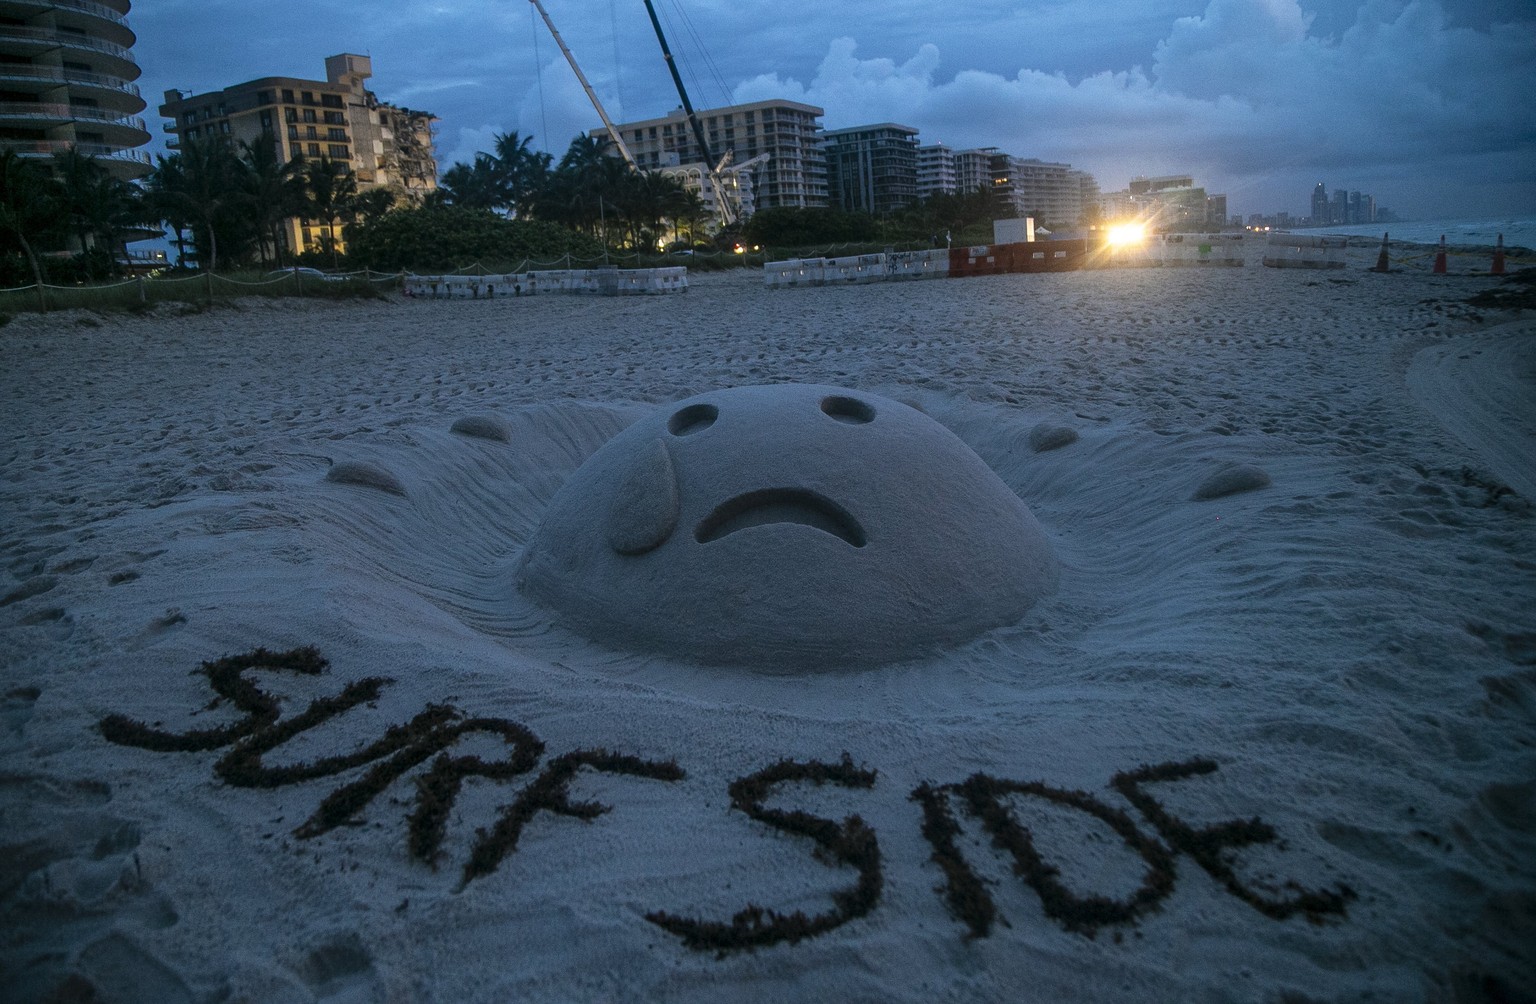 Am Strand von Surfside drückt diese Sand-Skulptur Trauer über das Unglück aus, bei dem ein großer Wohnkomplex teilweise einstürzte.